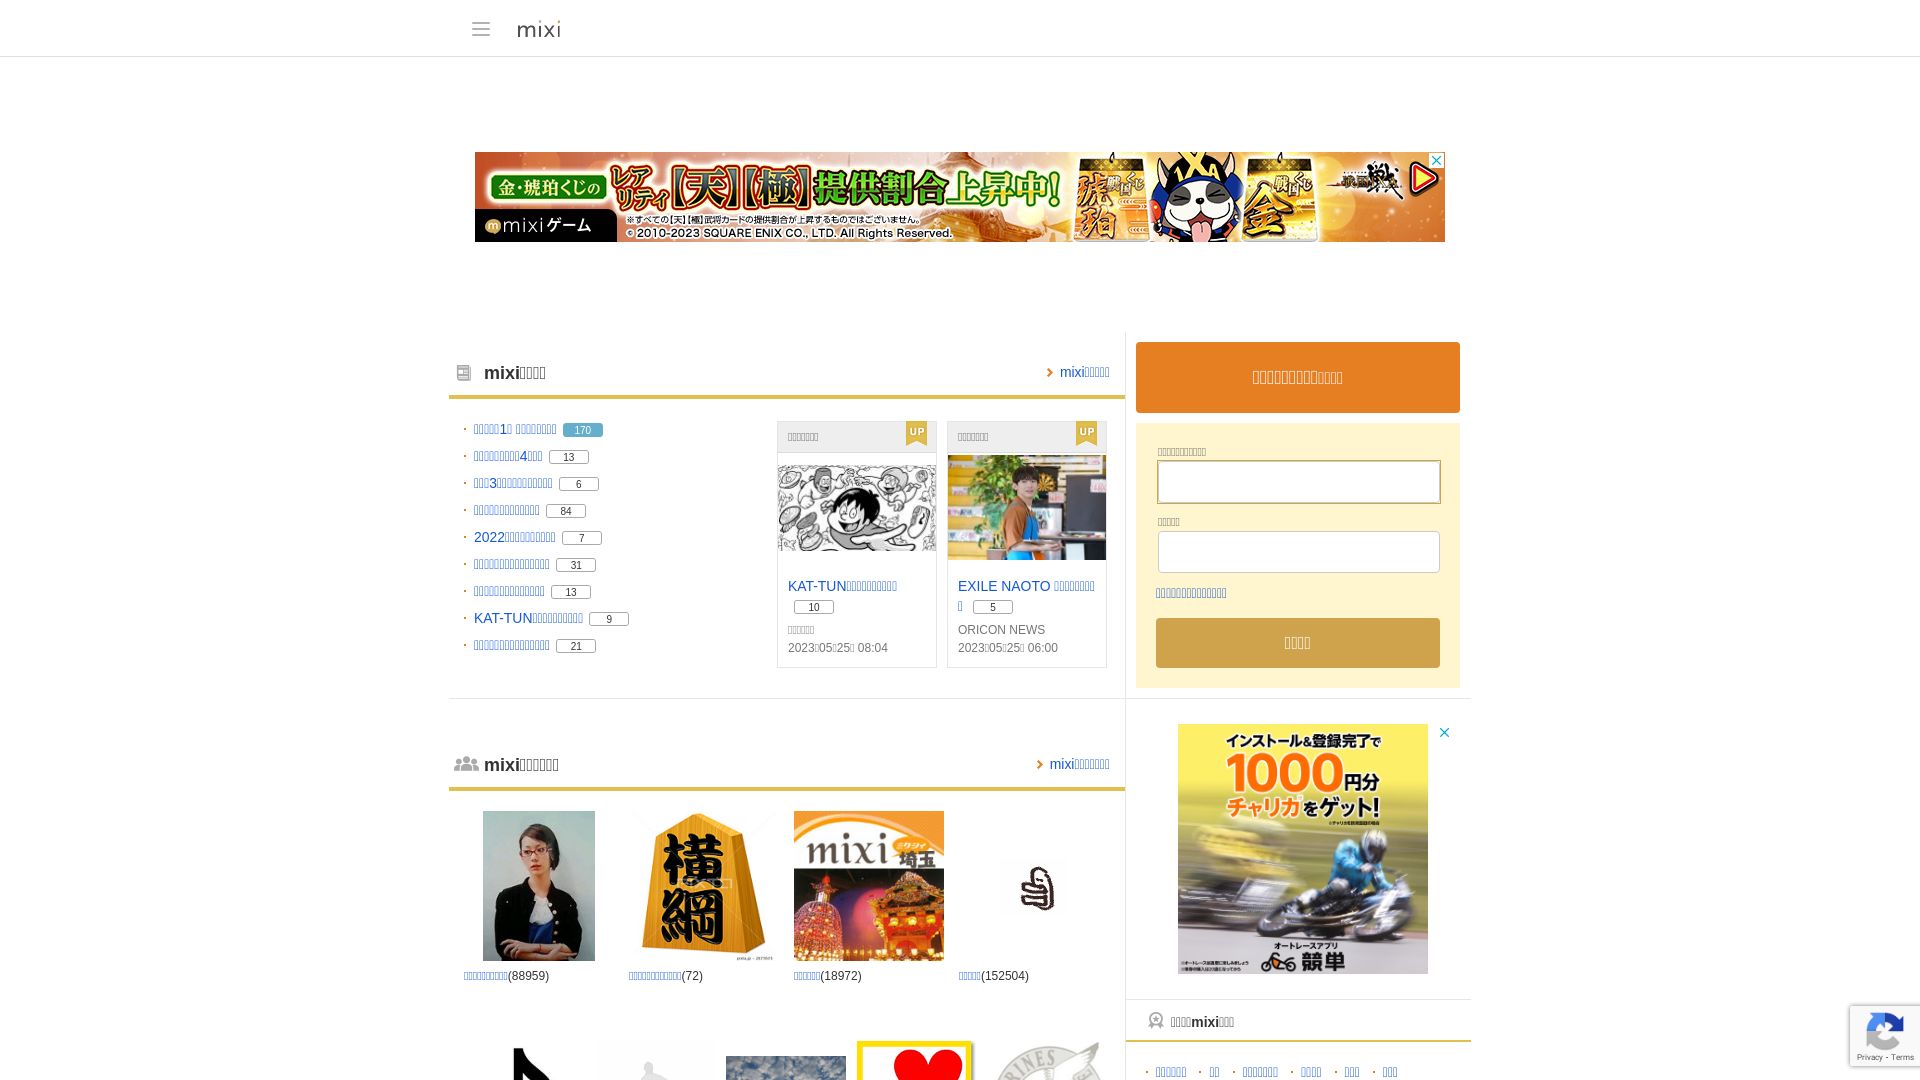 Website status mixi.jp is   ONLINE